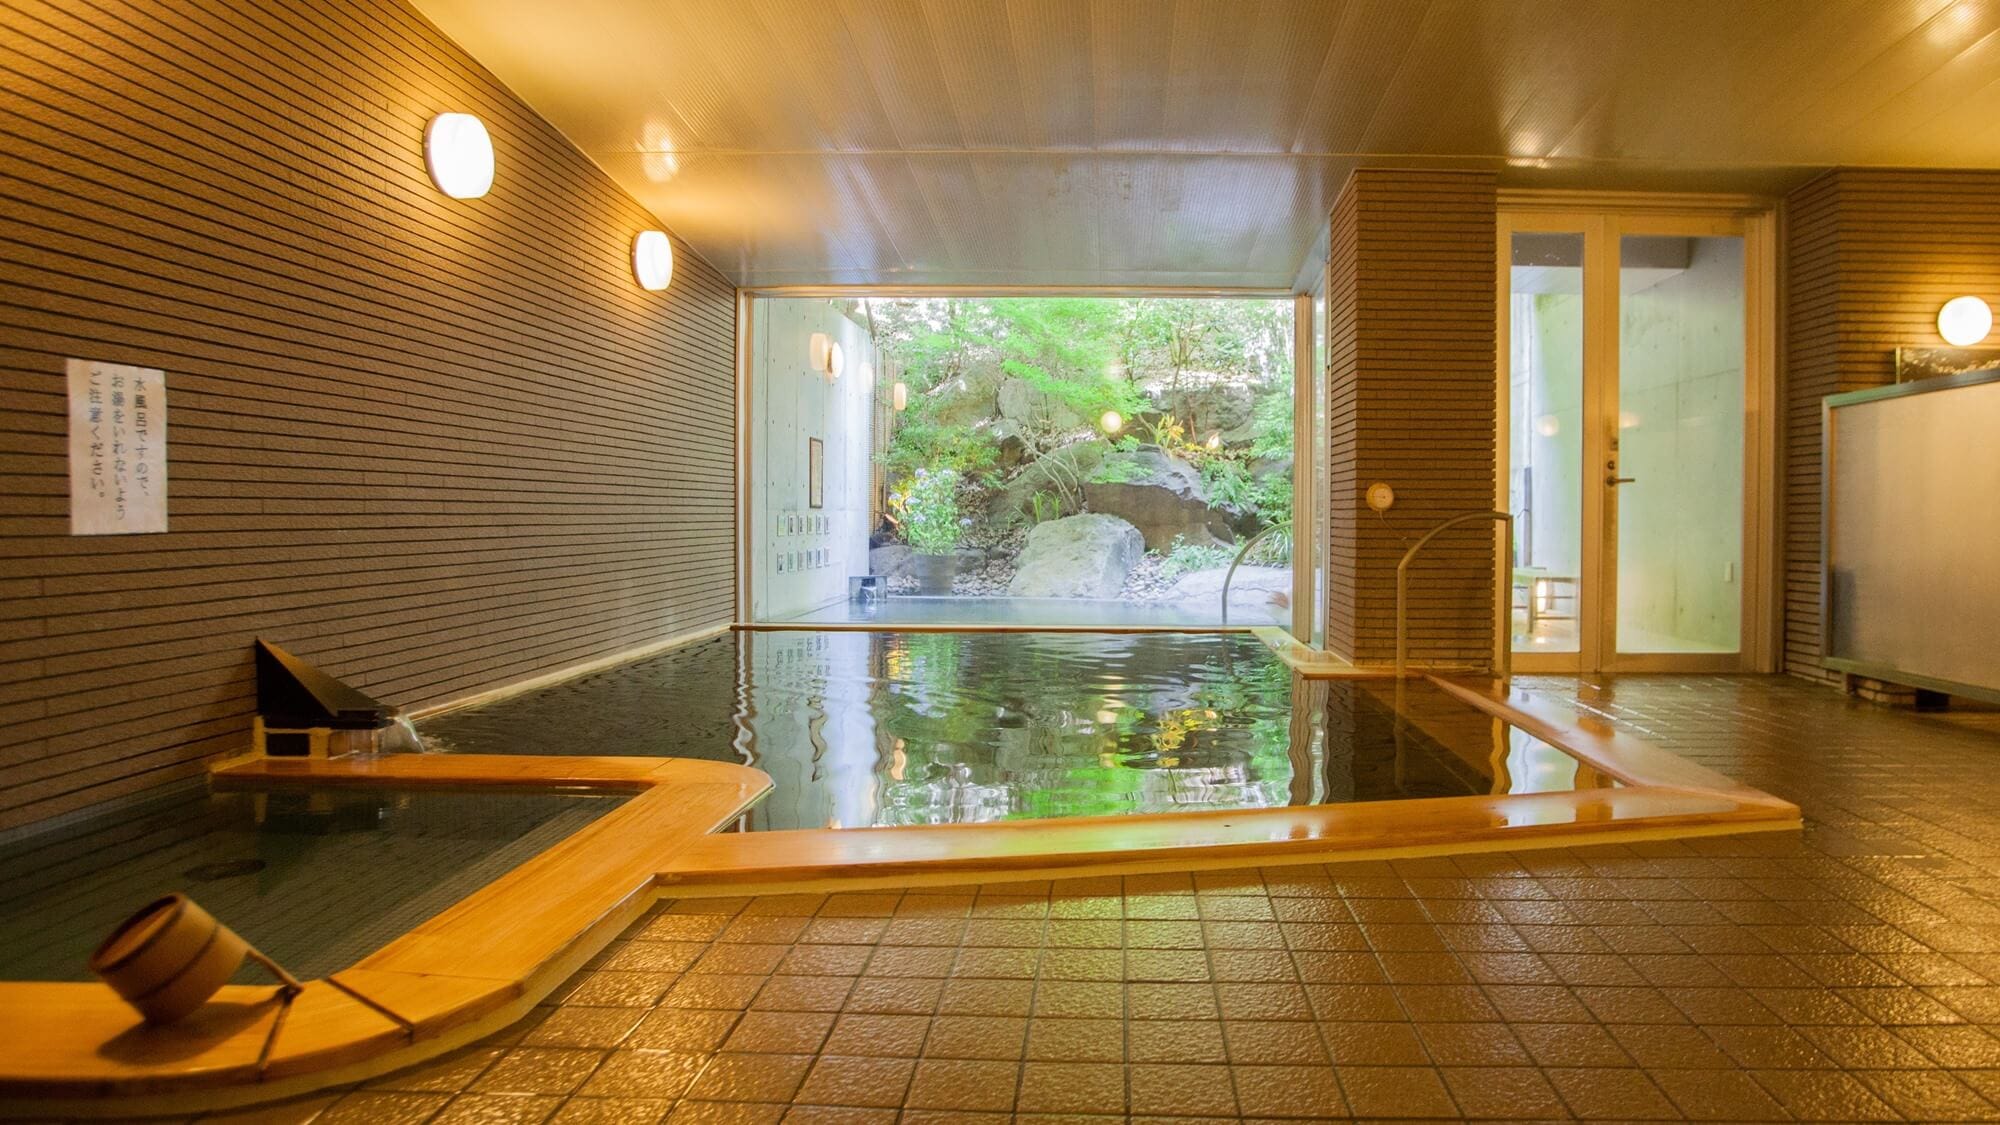 Pemandian air panas umum besar "Hana Izumi no Yu" pemandian dalam ruangan